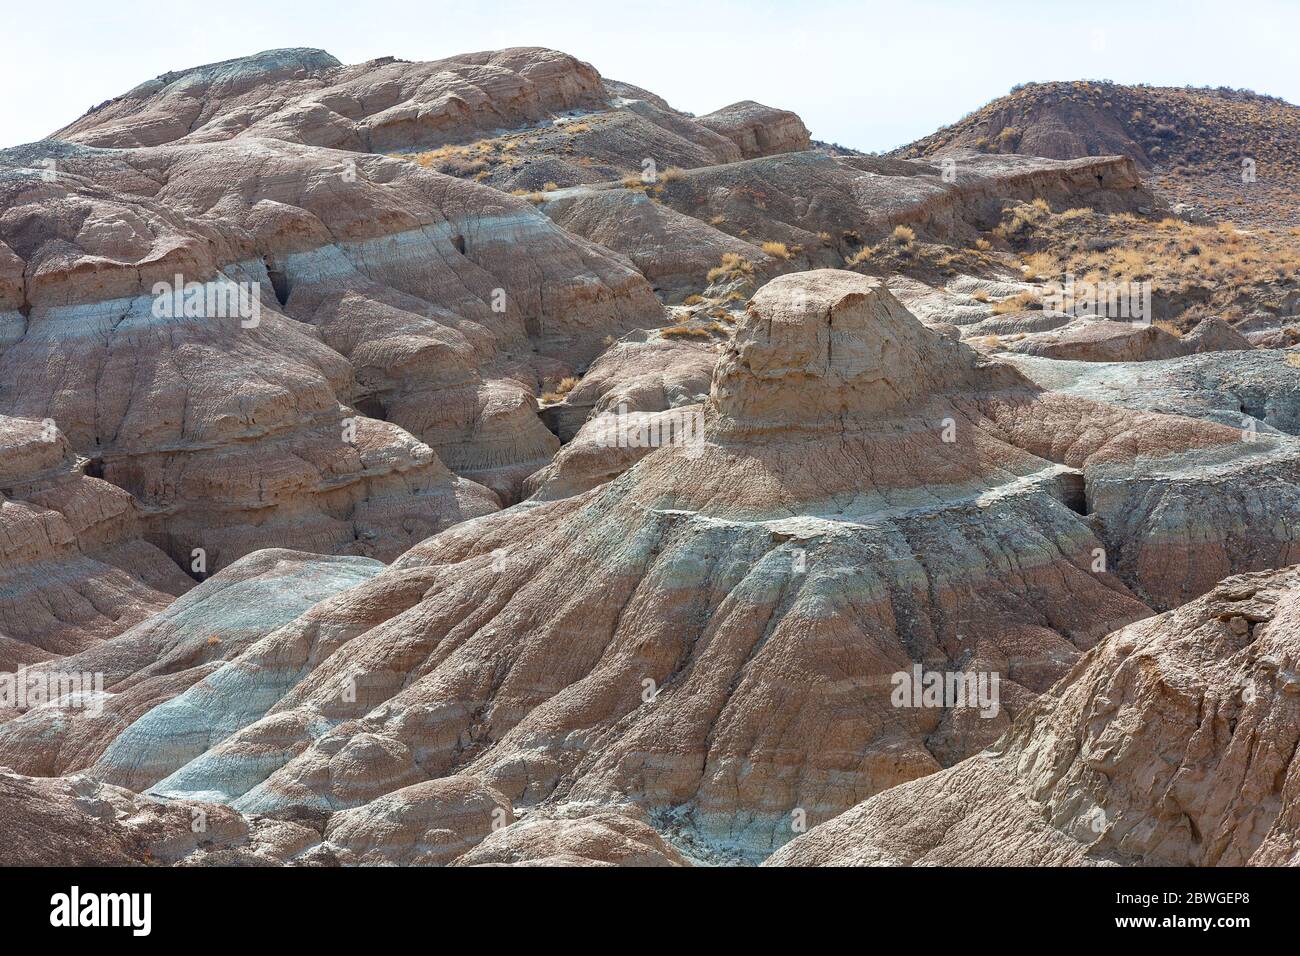 Terrains extrêmes et formations géologiques dans la région des monts Aktau, également connue sous le nom de montagnes blanches, au Kazakhstan Banque D'Images